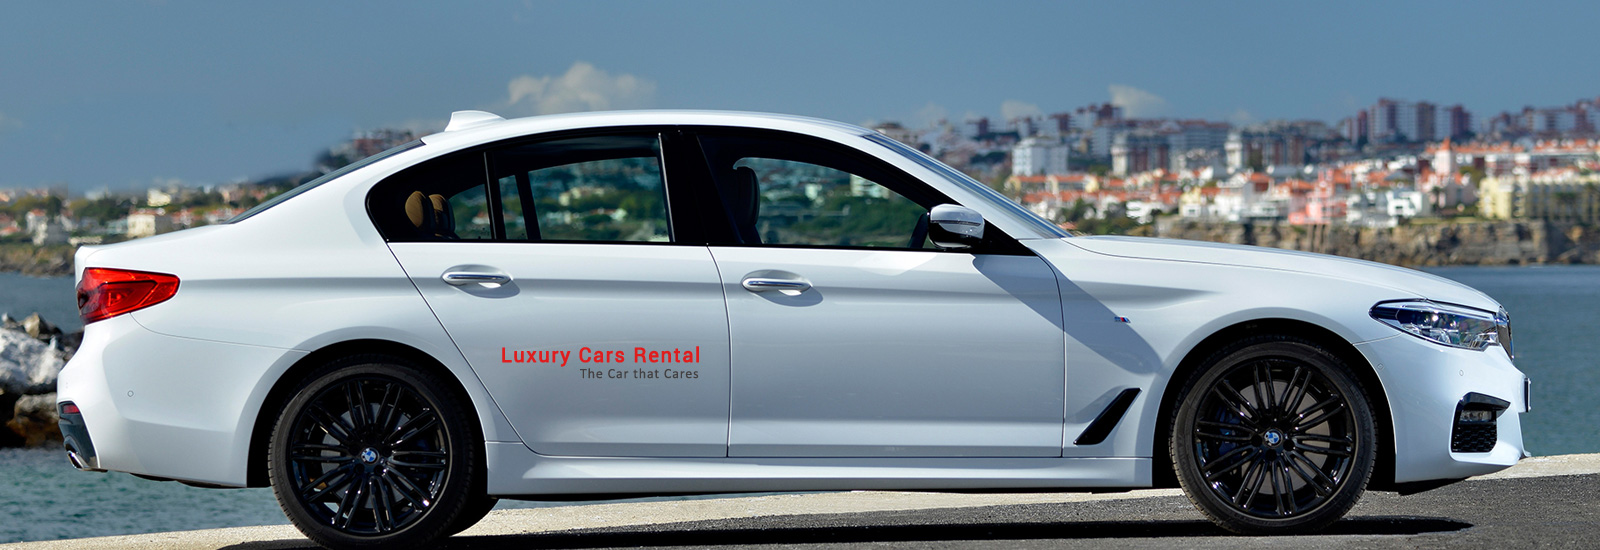 bmw luxury Car rental